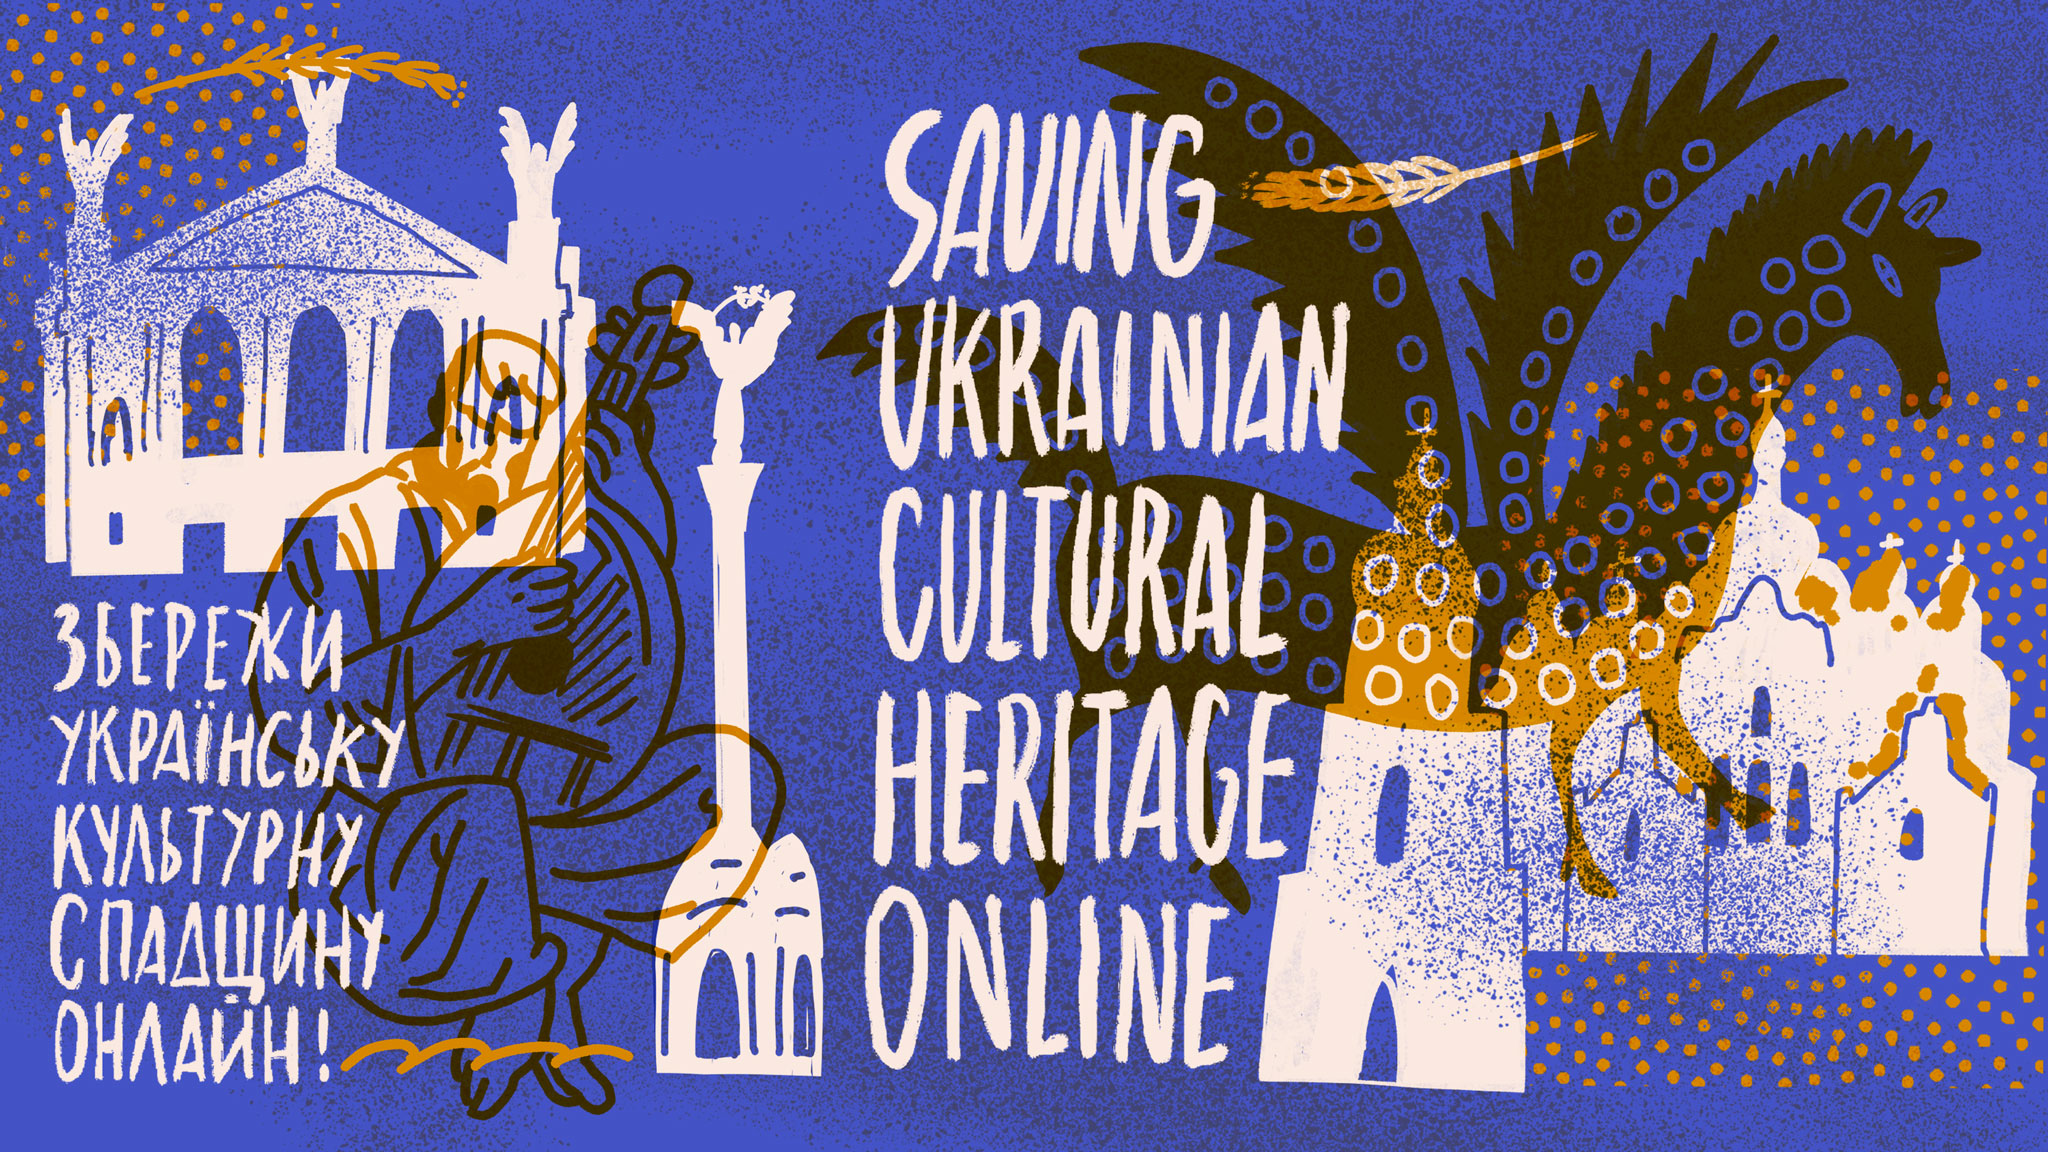 Illustration von Vlad Kholodnyi zum Projekt "SUCHO – Saving Ukrainian Cultural Heritage Online"